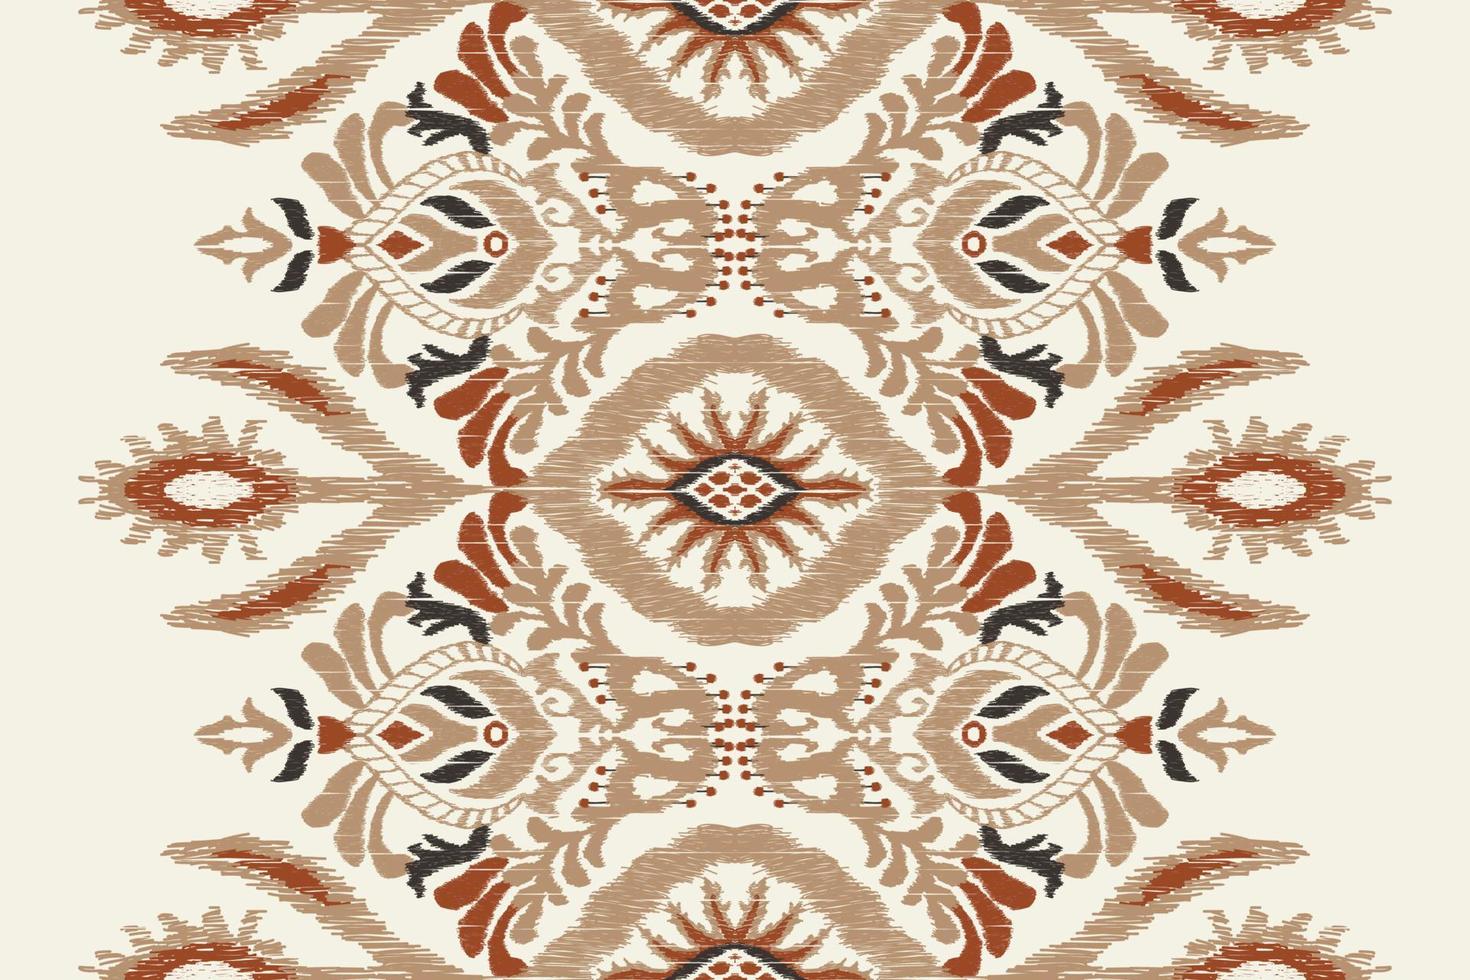 ikat floral paisley bordado em branco background.geometric étnica oriental padrão tradicional. asteca estilo abstrato vector illustration.design para textura, tecido, roupas, embrulho, decoração, cachecol.